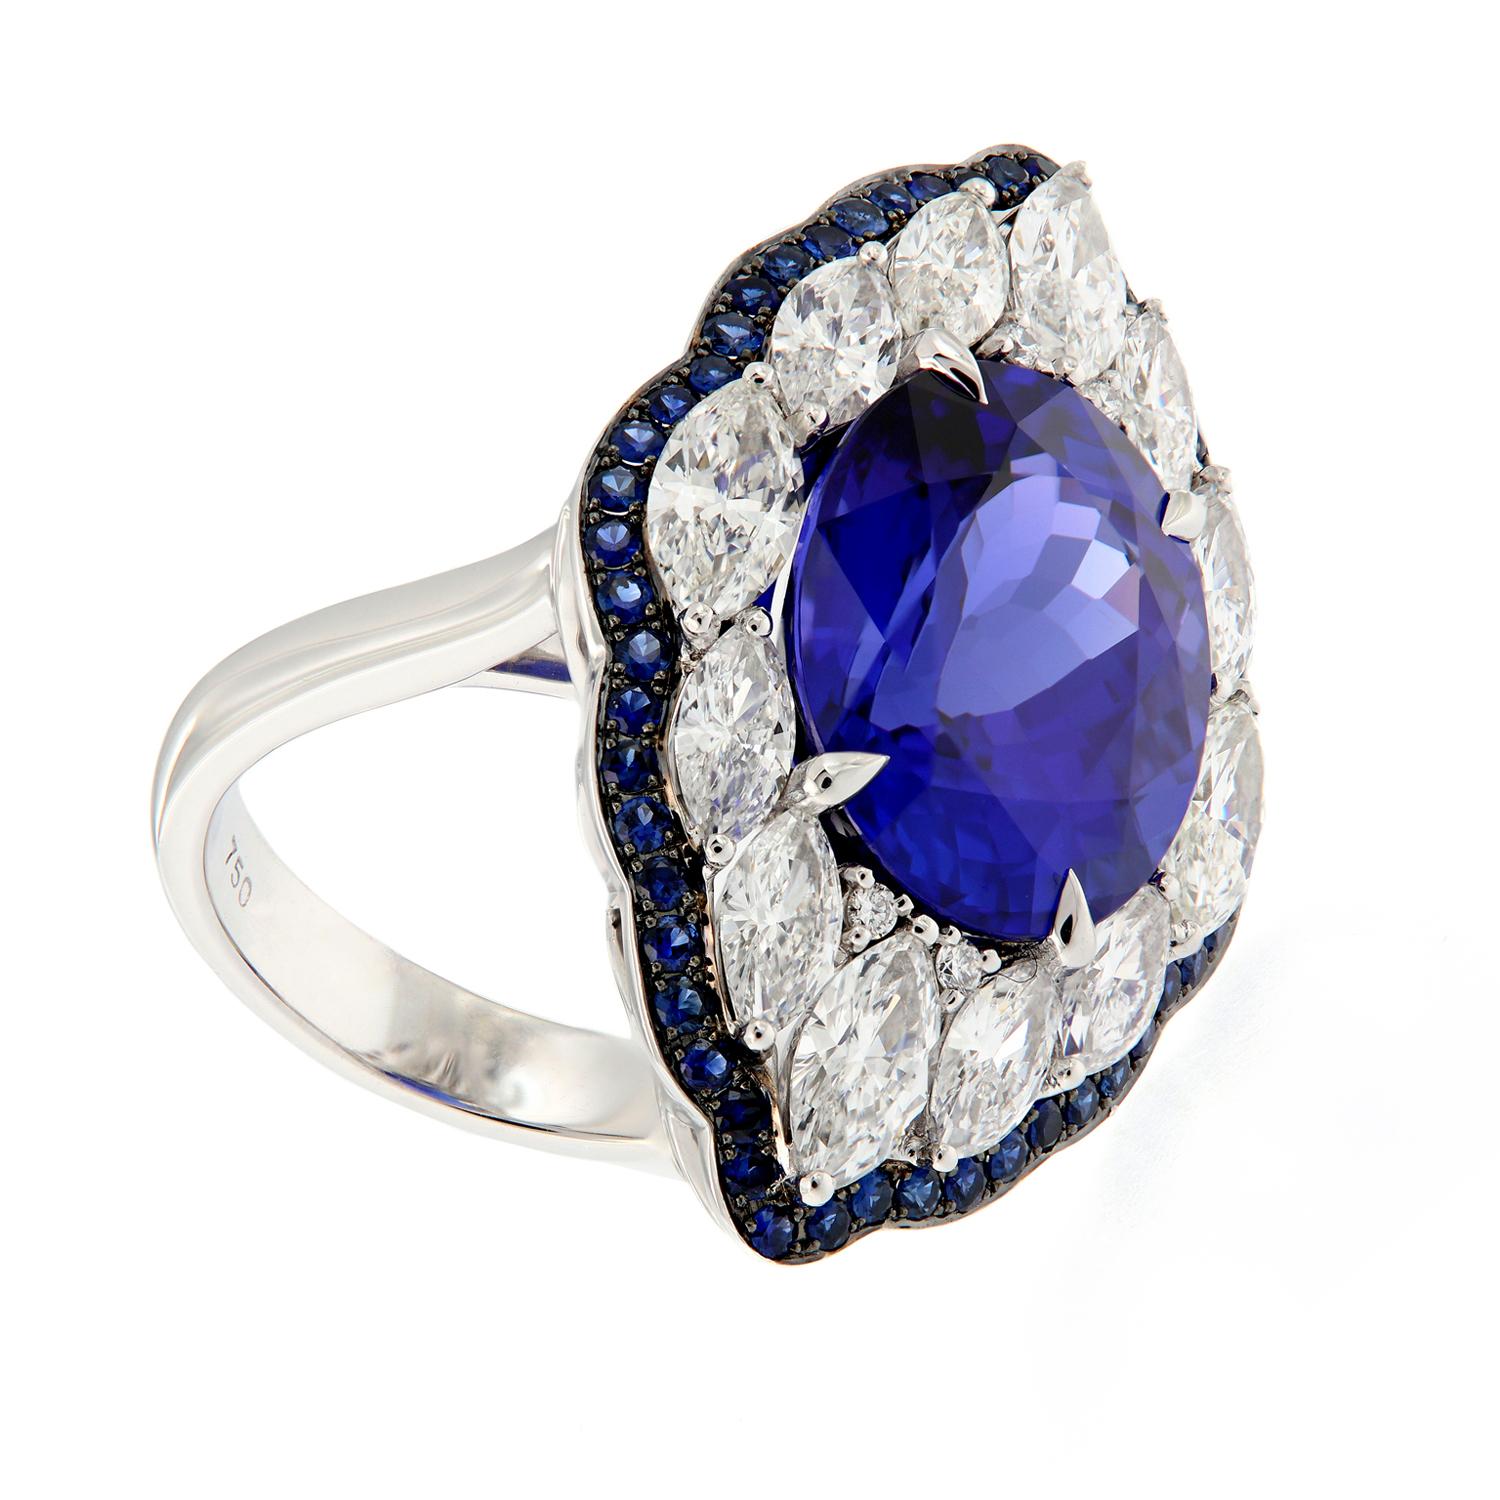 Women's Art Deco Style 18 Karat WG 10.48 Ct. Tanzanite, 2.78 Ct Diamond & Sapphire Ring